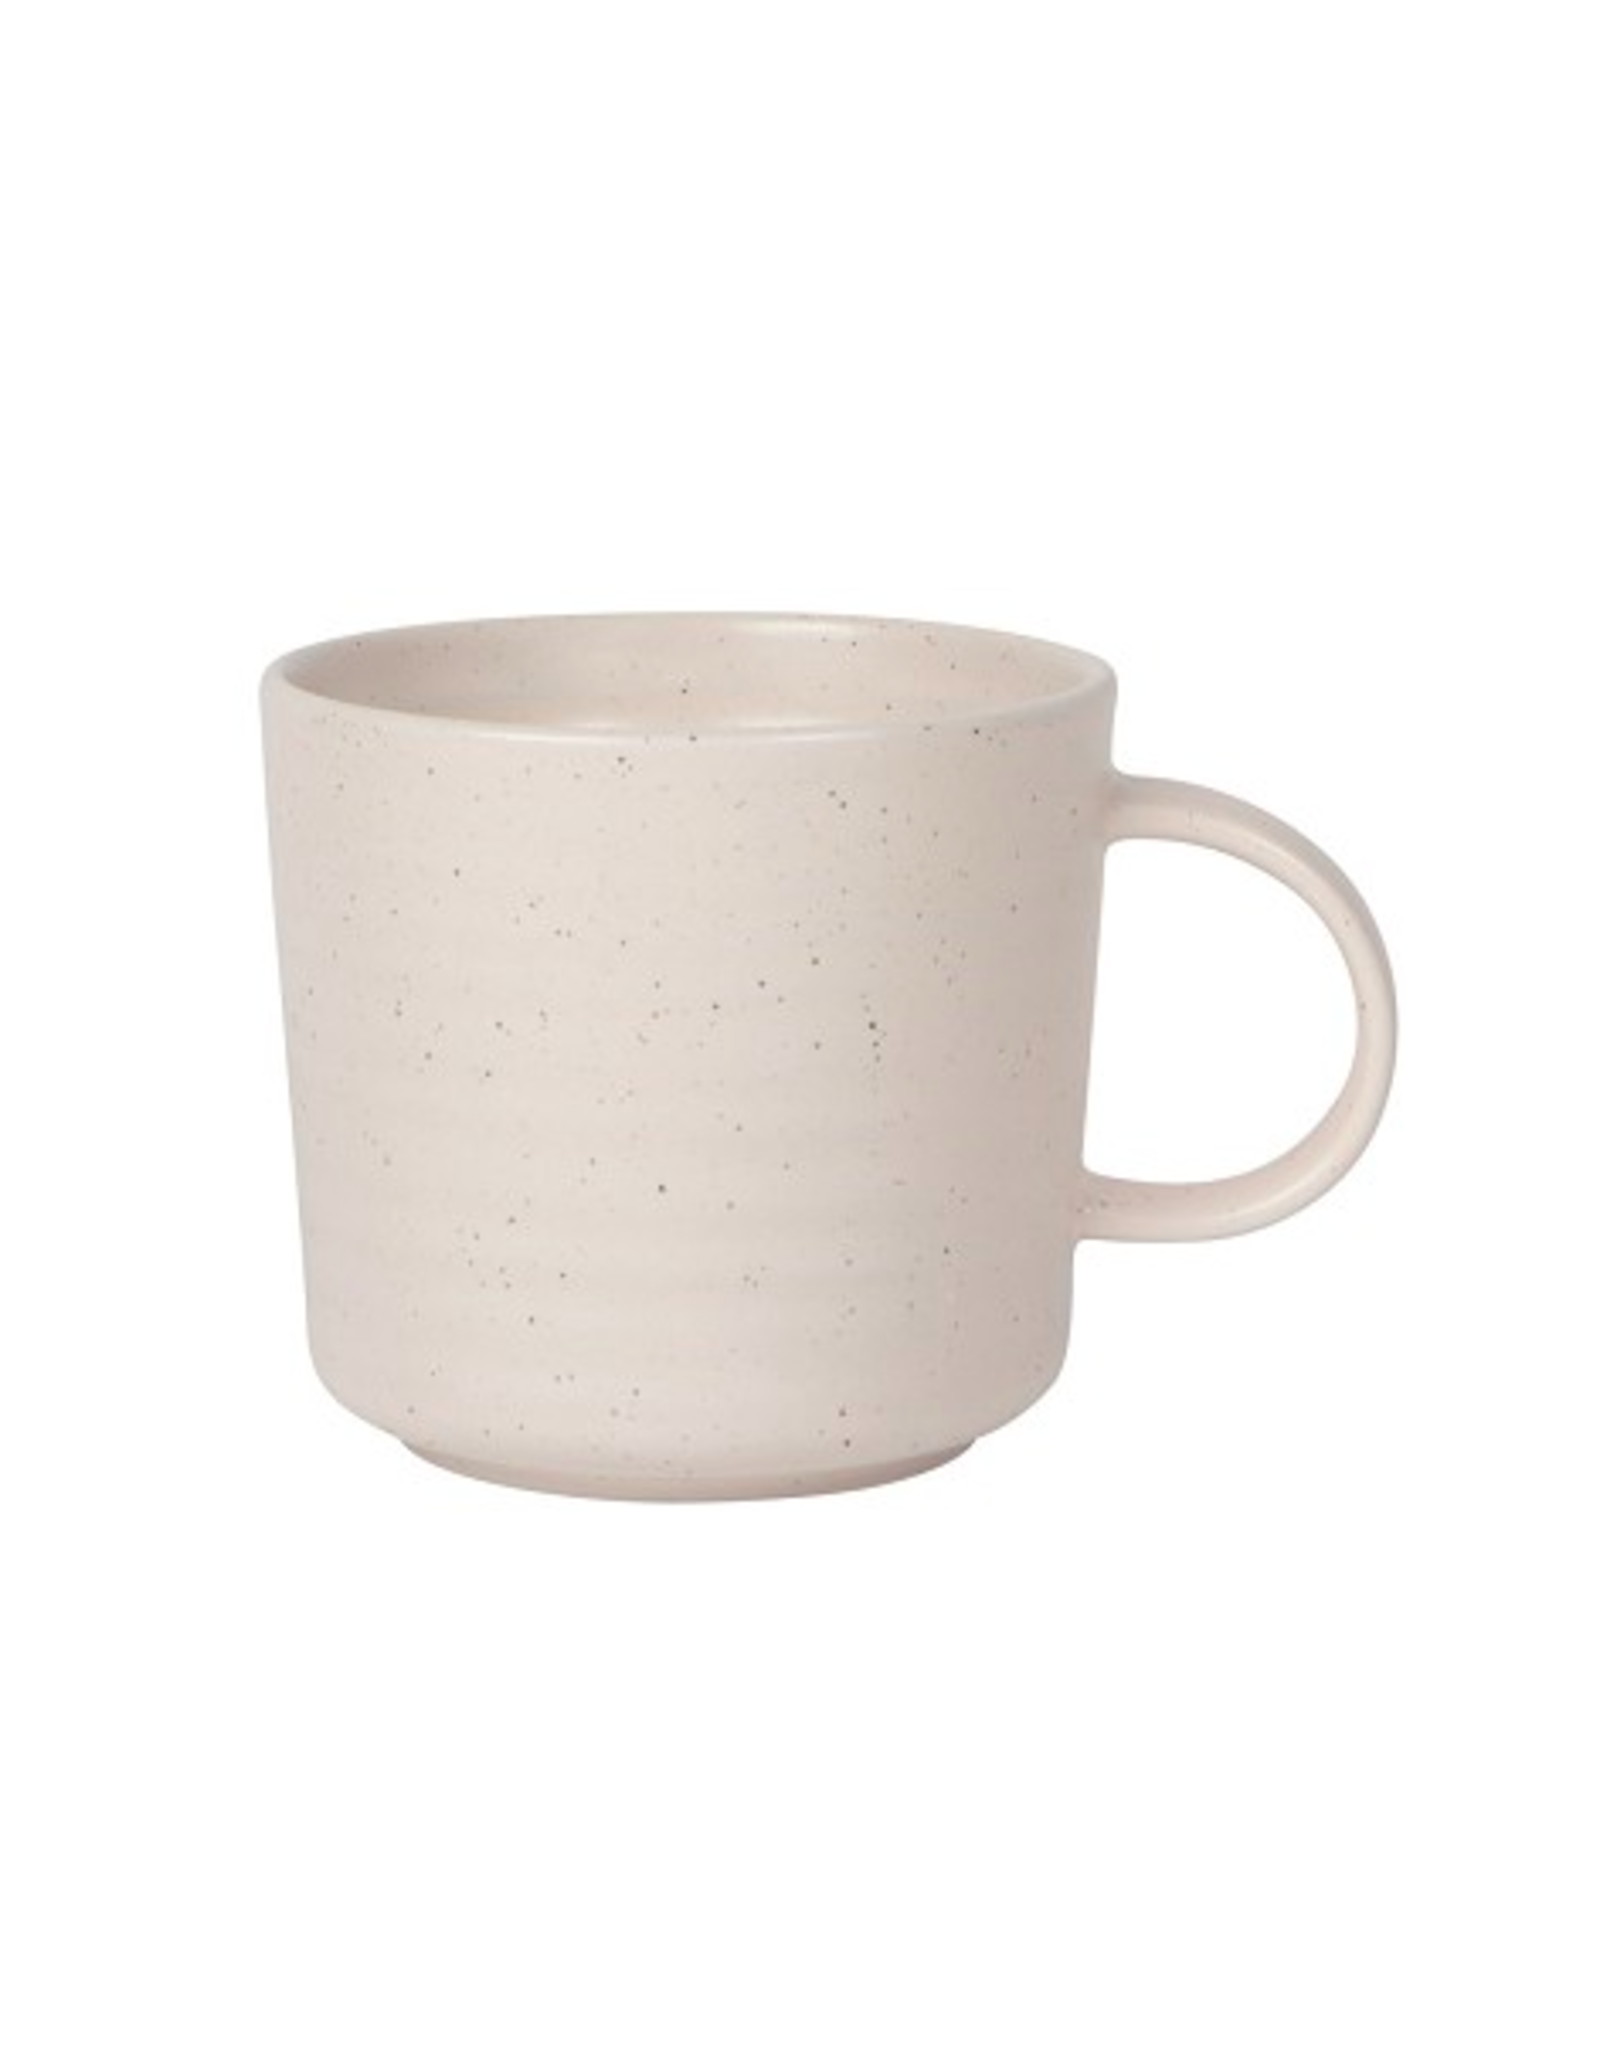 TIMCo DCA - Mug / Soft Speckle, Sand, 16oz